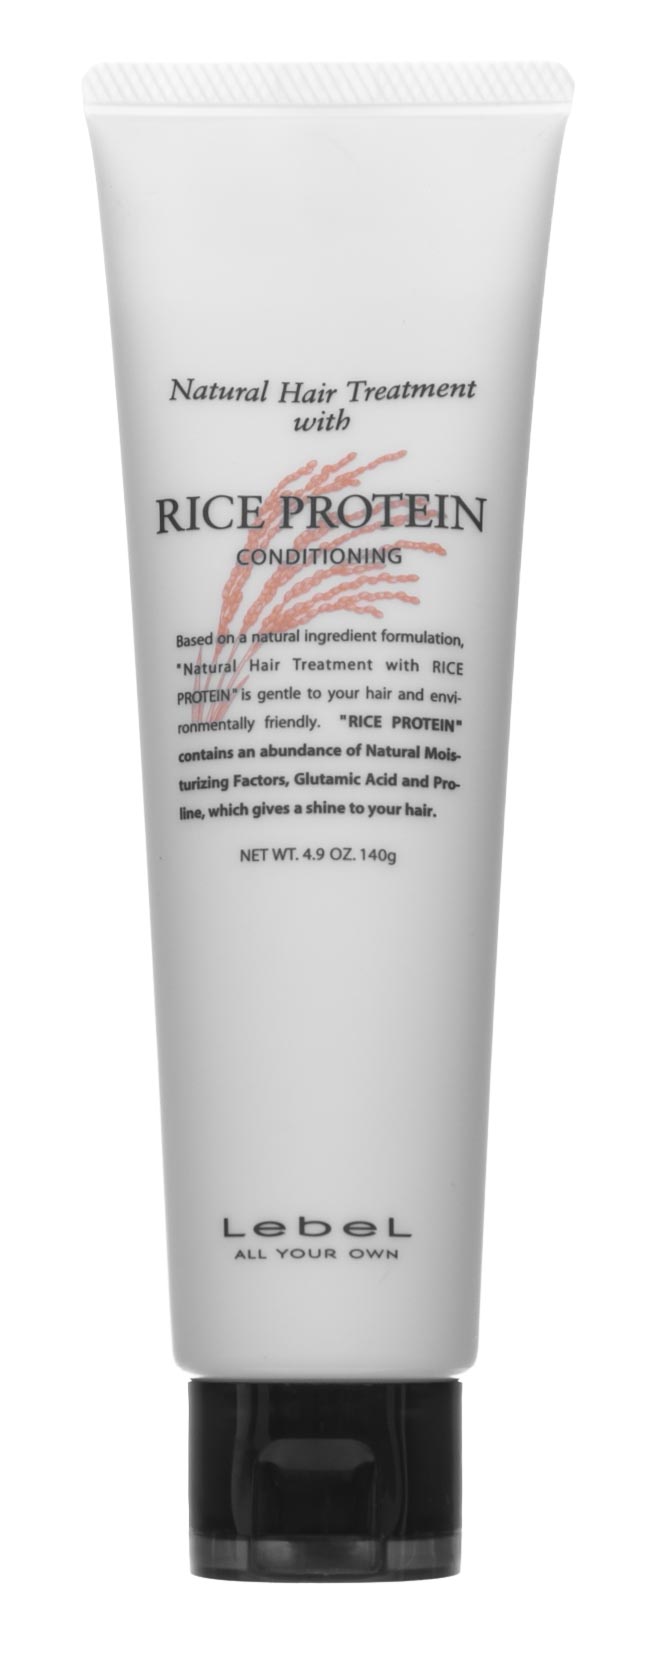 Lebel Восстанавливающая маска для волос Rice Protein, 140 г (Lebel, Натуральная серия) lebel питательная маска для волос egg protein 140 г lebel натуральная серия